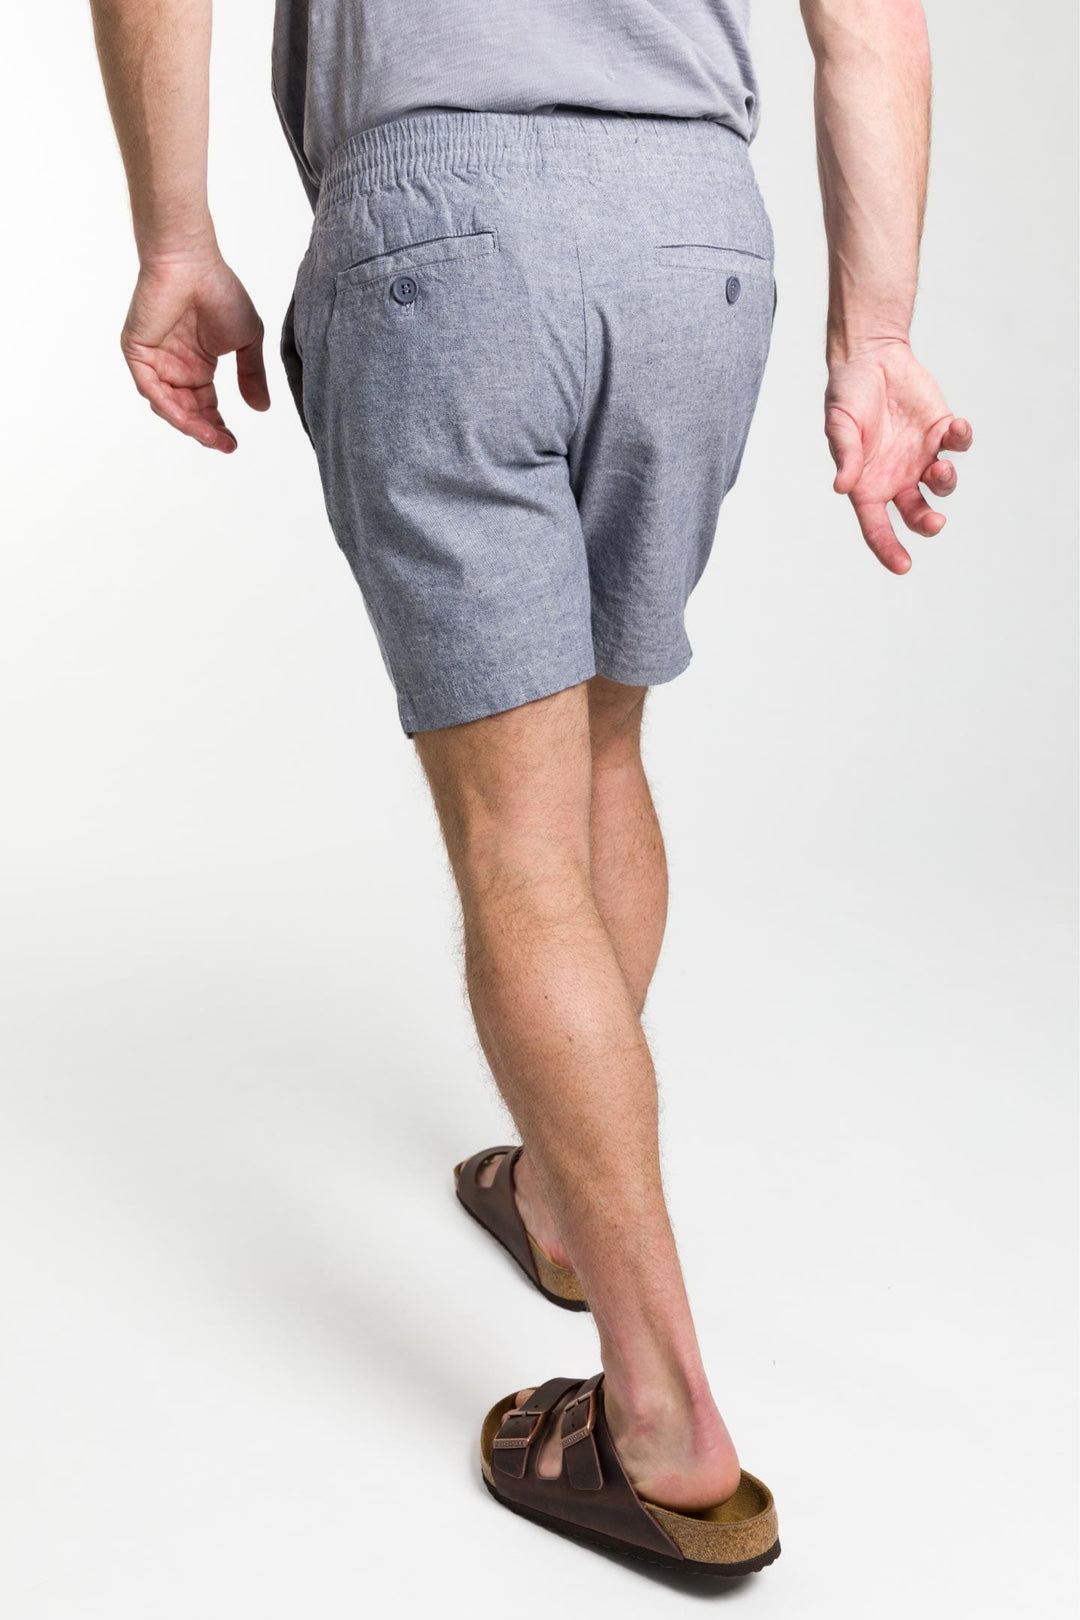 Buy Blue Linen Short for Short Men | Ash & Erie   Linen Short